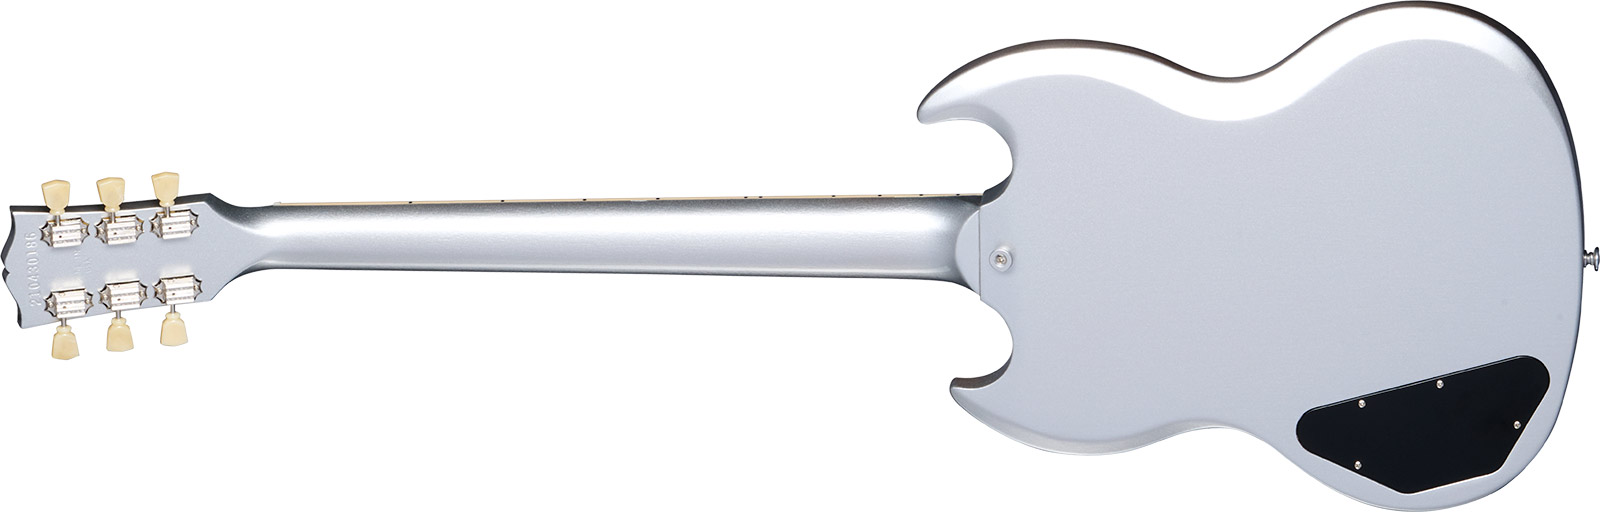 Gibson Sg Standard 1961 Custom Color 2h Ht Rw - Silver Mist - Double Cut E-Gitarre - Variation 1